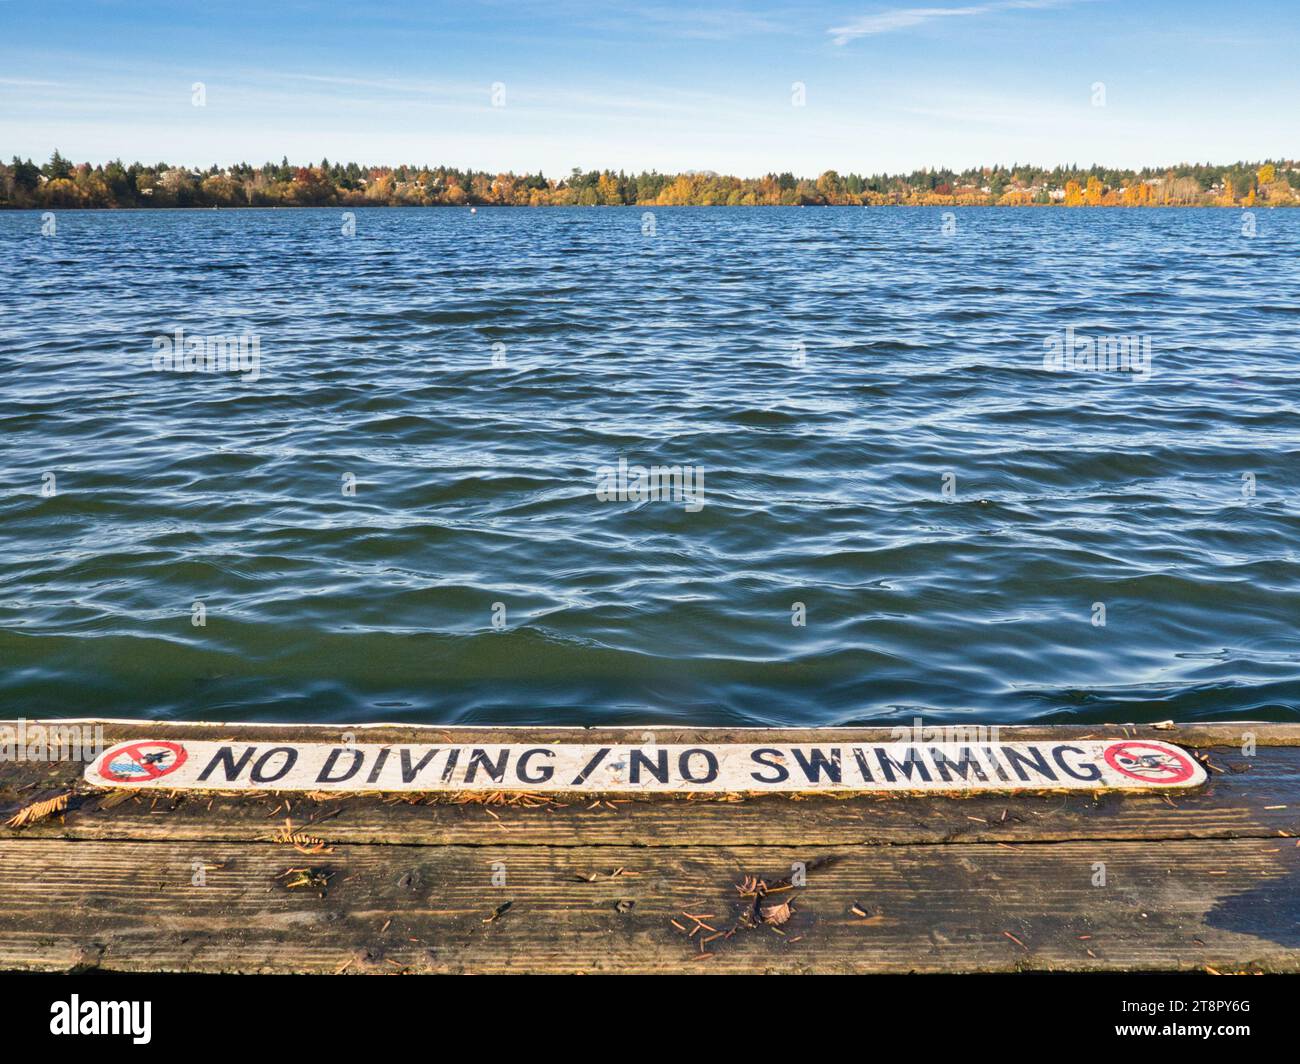 Signe « PAS DE PLONGÉE / PAS DE NATATION » à la fin du quai du lac en bois dans le parc de la ville avec un beau feuillage d'automne au loin. Ondulations douces sur le lac. Banque D'Images